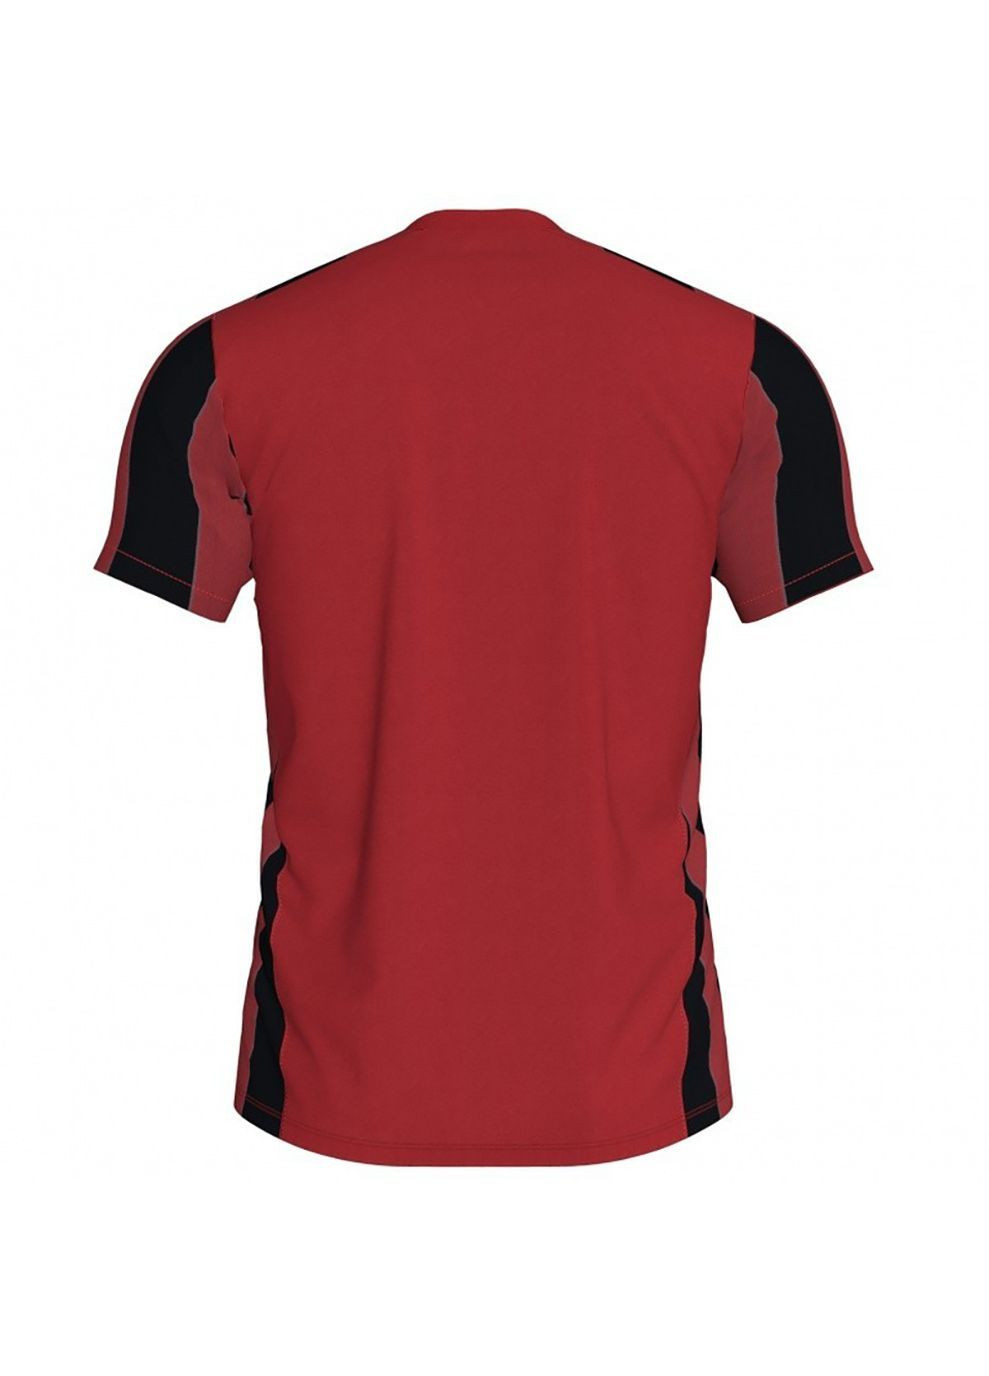 Червона футболка inter t-shirt red-black s/s червоний,чорний Joma